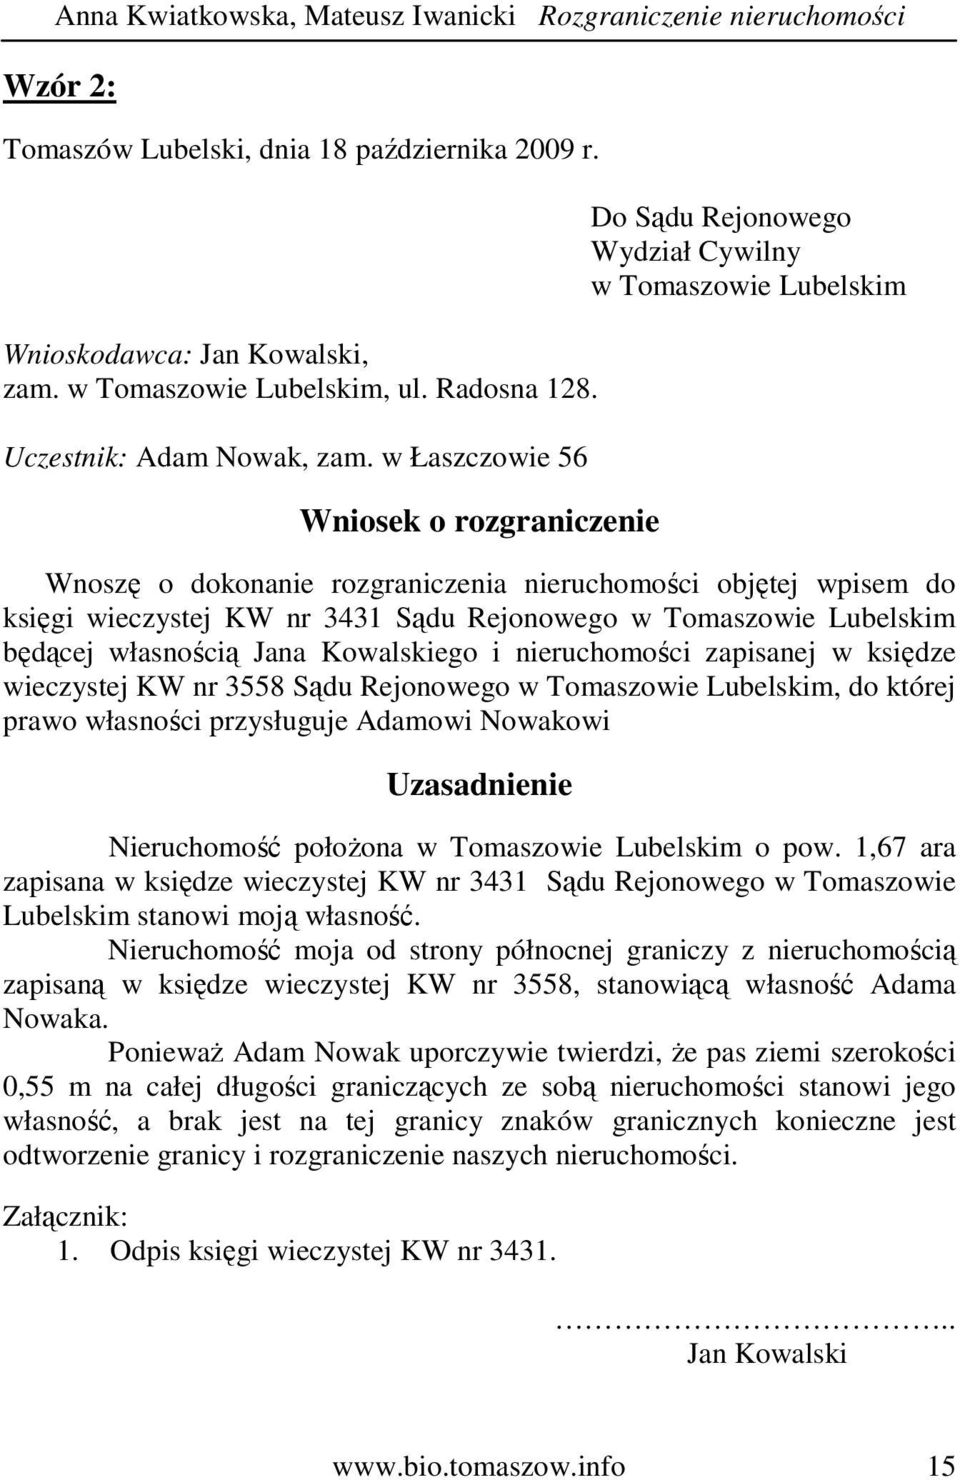 w Łaszczowie 56 Wniosek o rozgraniczenie Do Sądu Rejonowego Wydział Cywilny w Tomaszowie Lubelskim Wnoszę o dokonanie rozgraniczenia nieruchomości objętej wpisem do księgi wieczystej KW nr 3431 Sądu